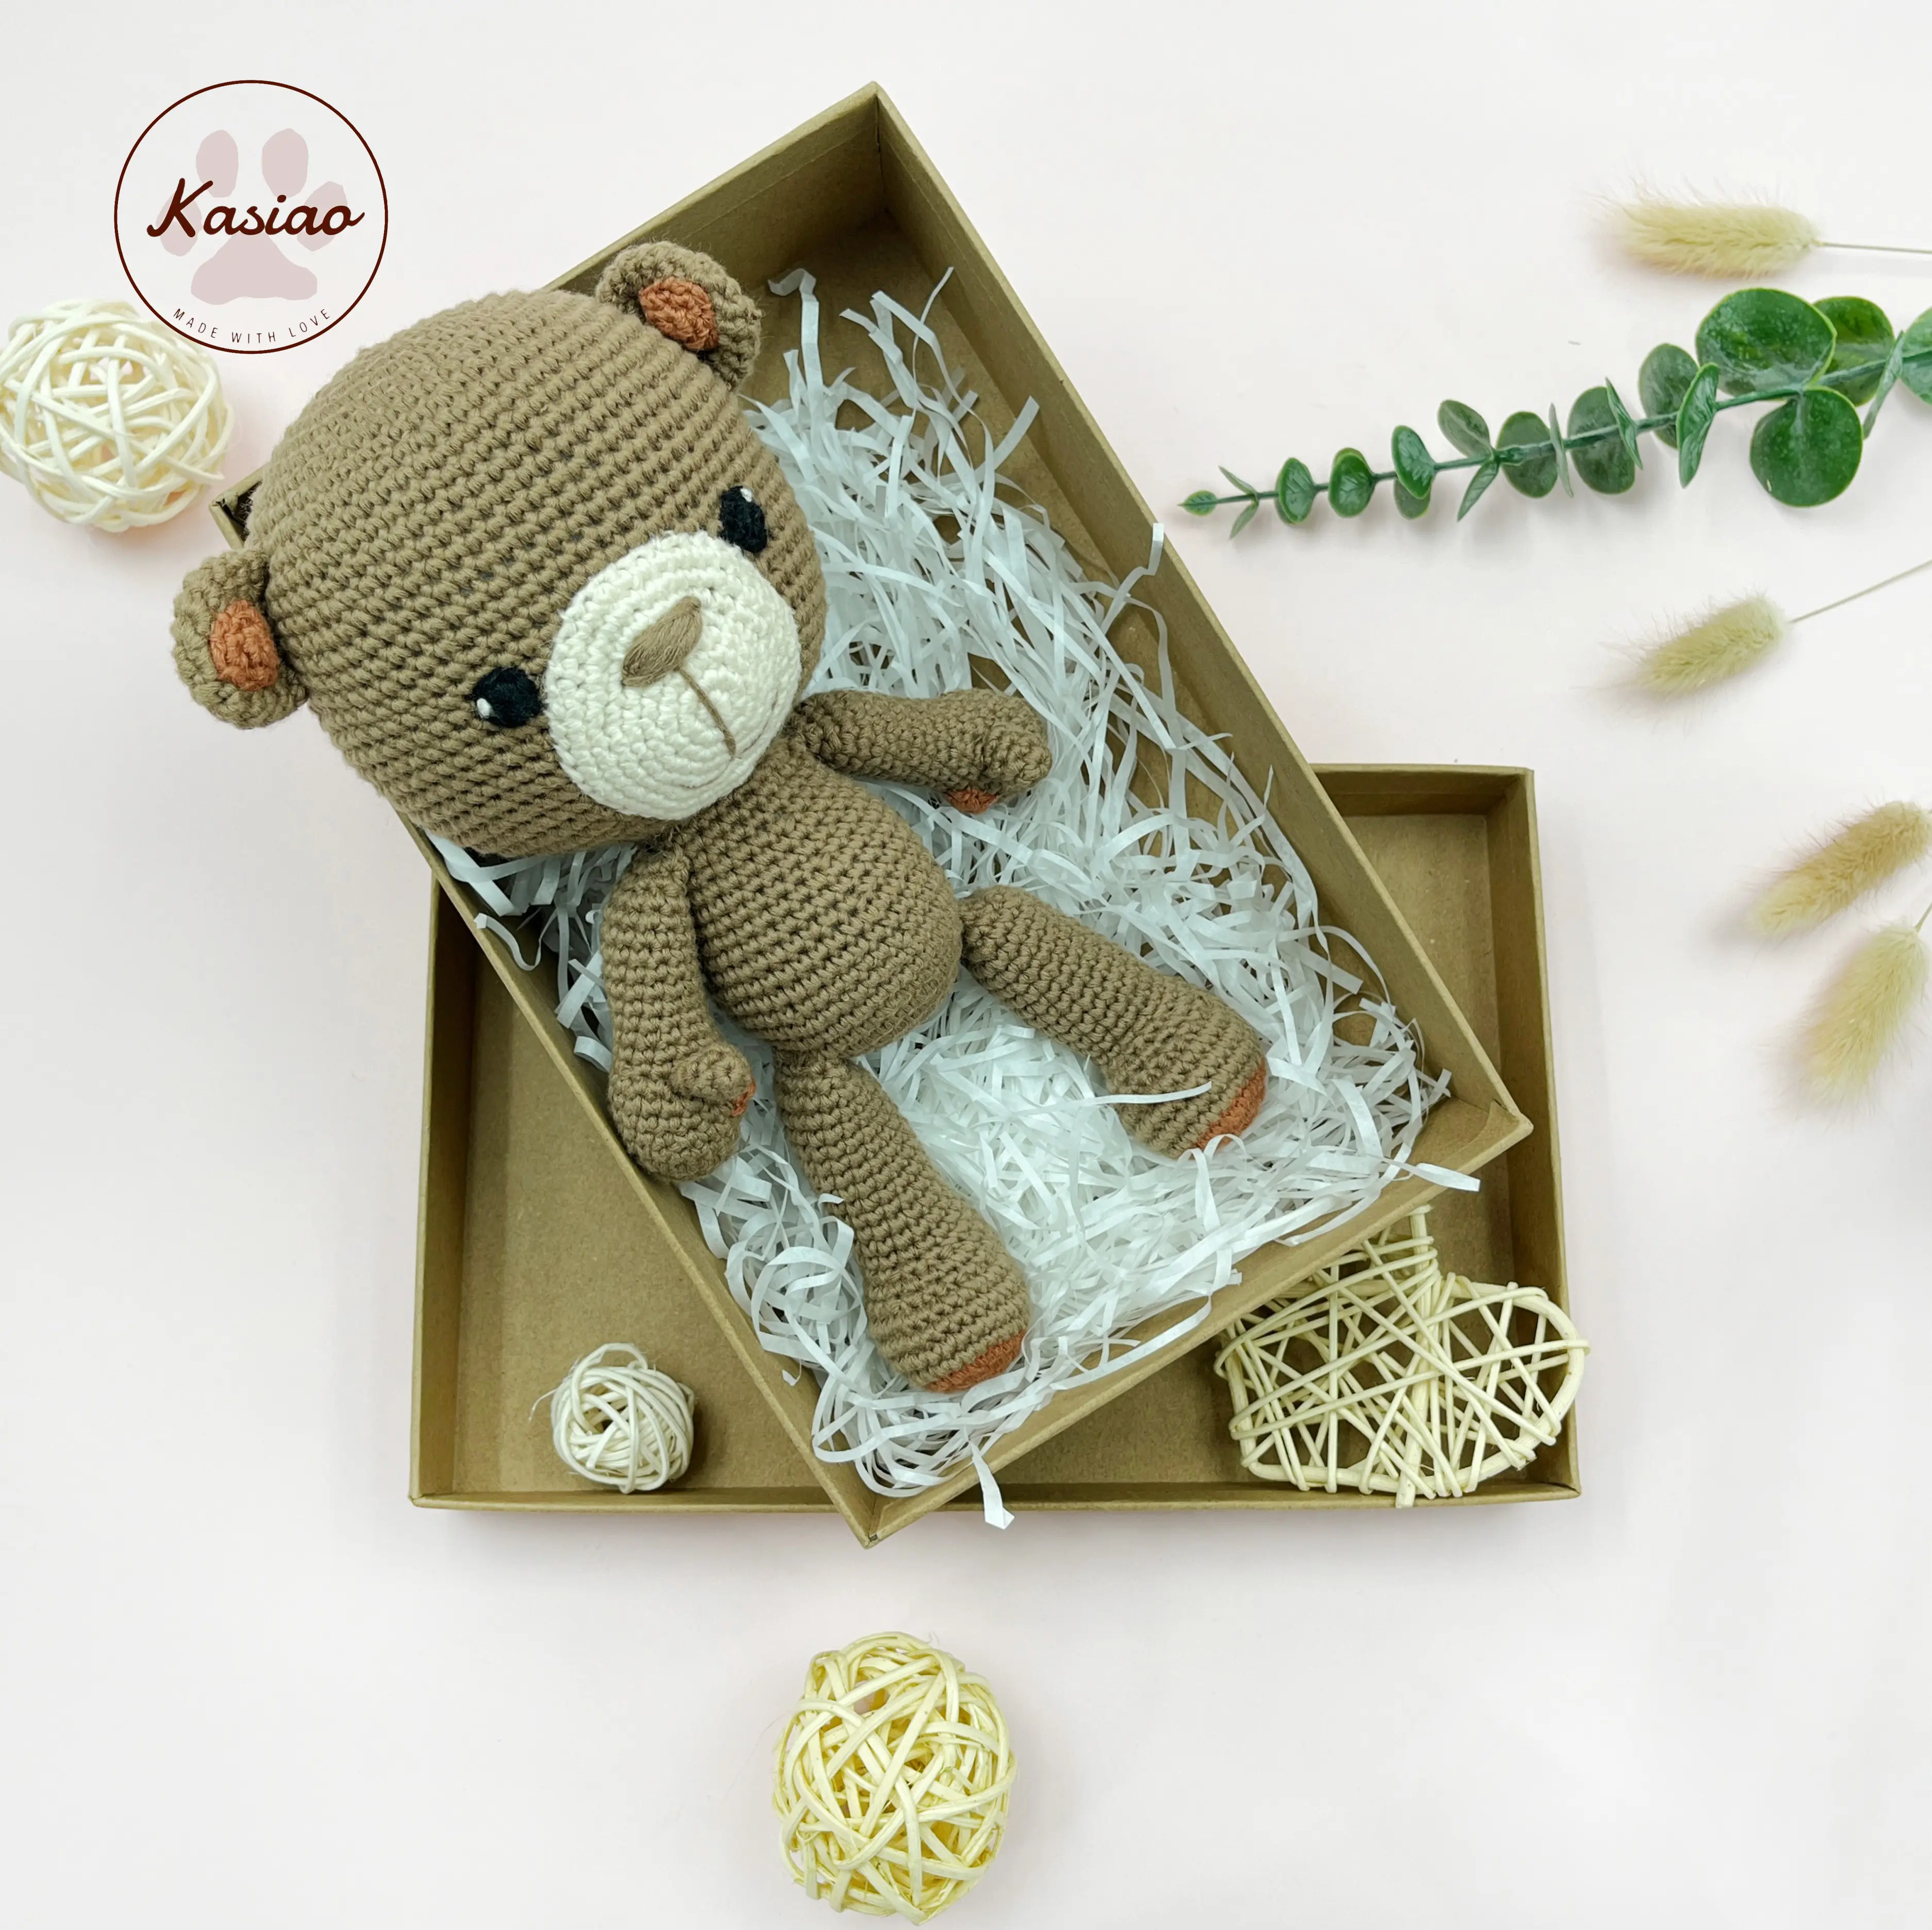 Brinquedos de crochê por atacado acessíveis: Brinquedos de animais de crochê feitos à mão, incluindo um urso de crochê fofo